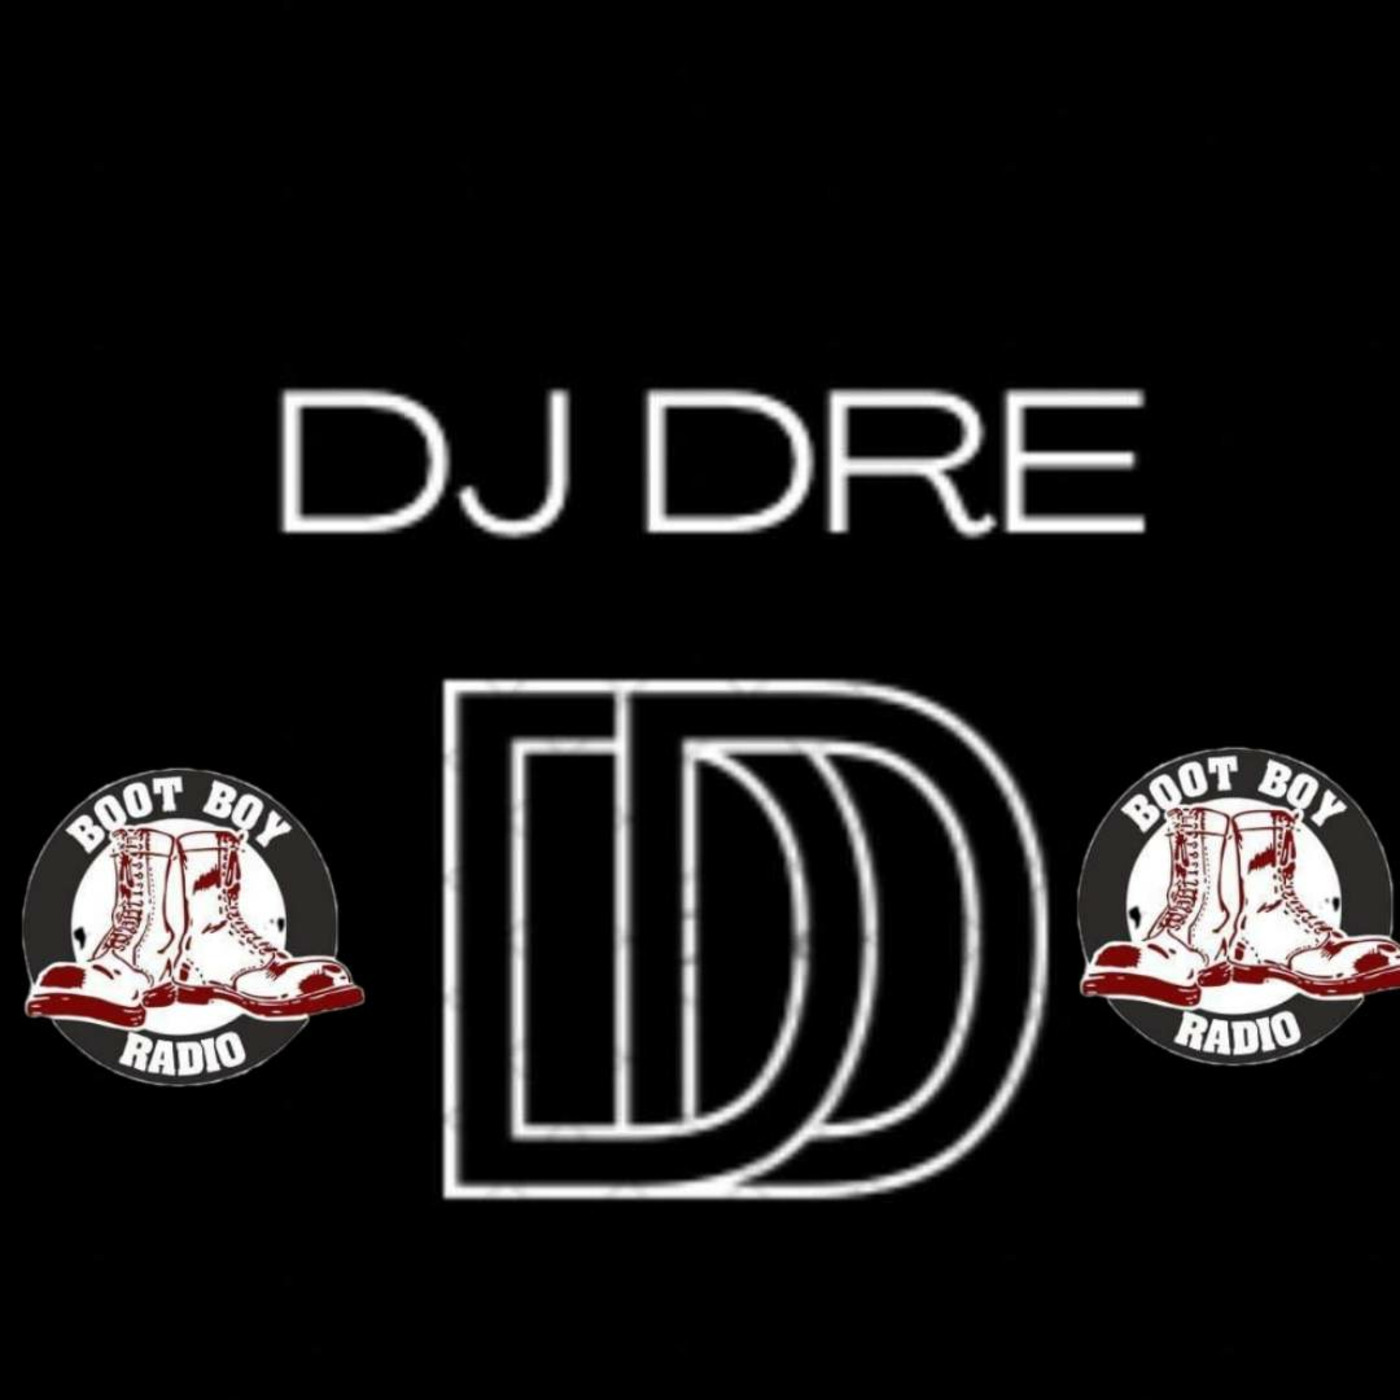 Episode 2741: Dj Dre Show 2 2022 On www.bootboyradio.net